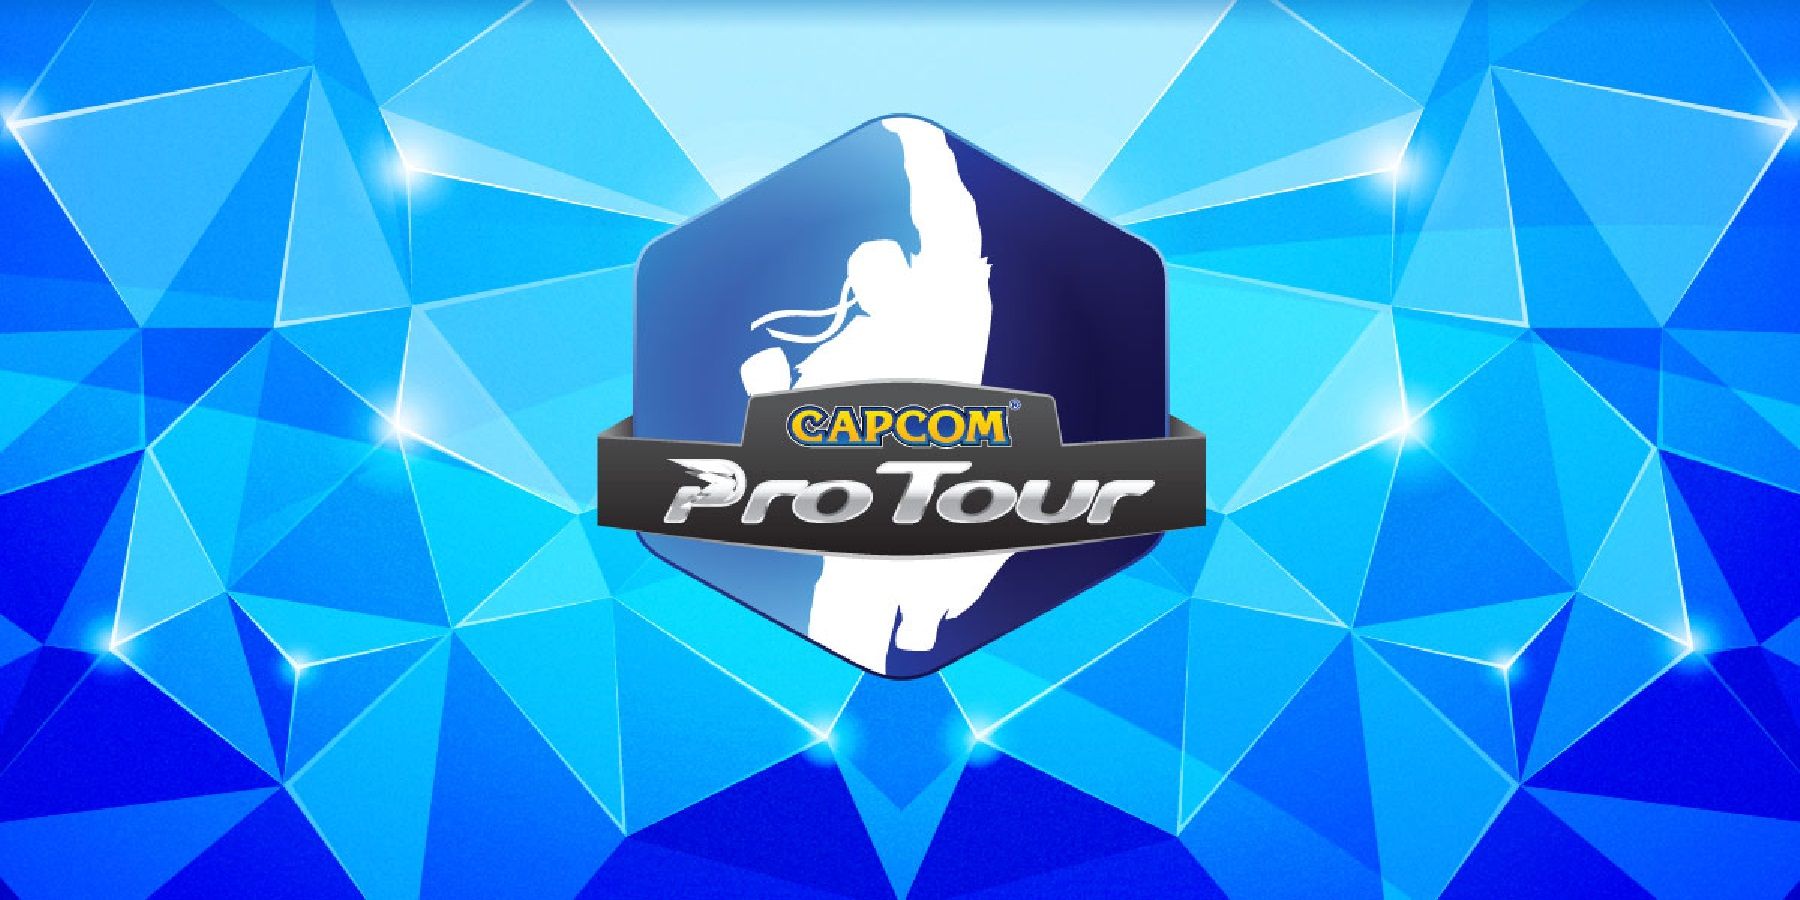 Обновленные правила проведения турниров от Capcom разозлили организаторов